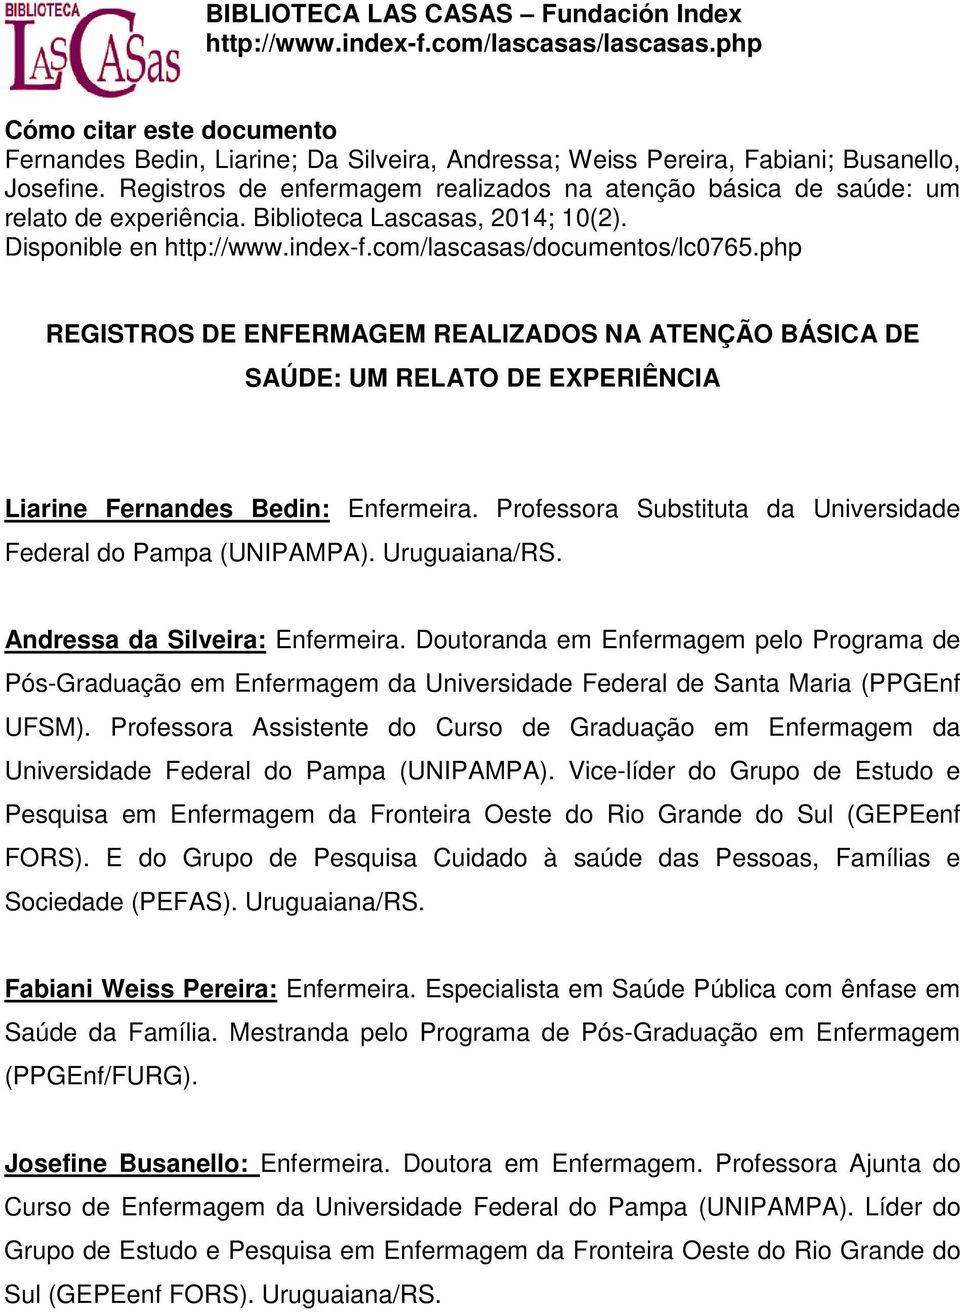 Registros de enfermagem realizados na atenção básica de saúde: um relato de experiência. Biblioteca Lascasas, 2014; 10(2). Disponible en http://www.index-f.com/lascasas/documentos/lc0765.